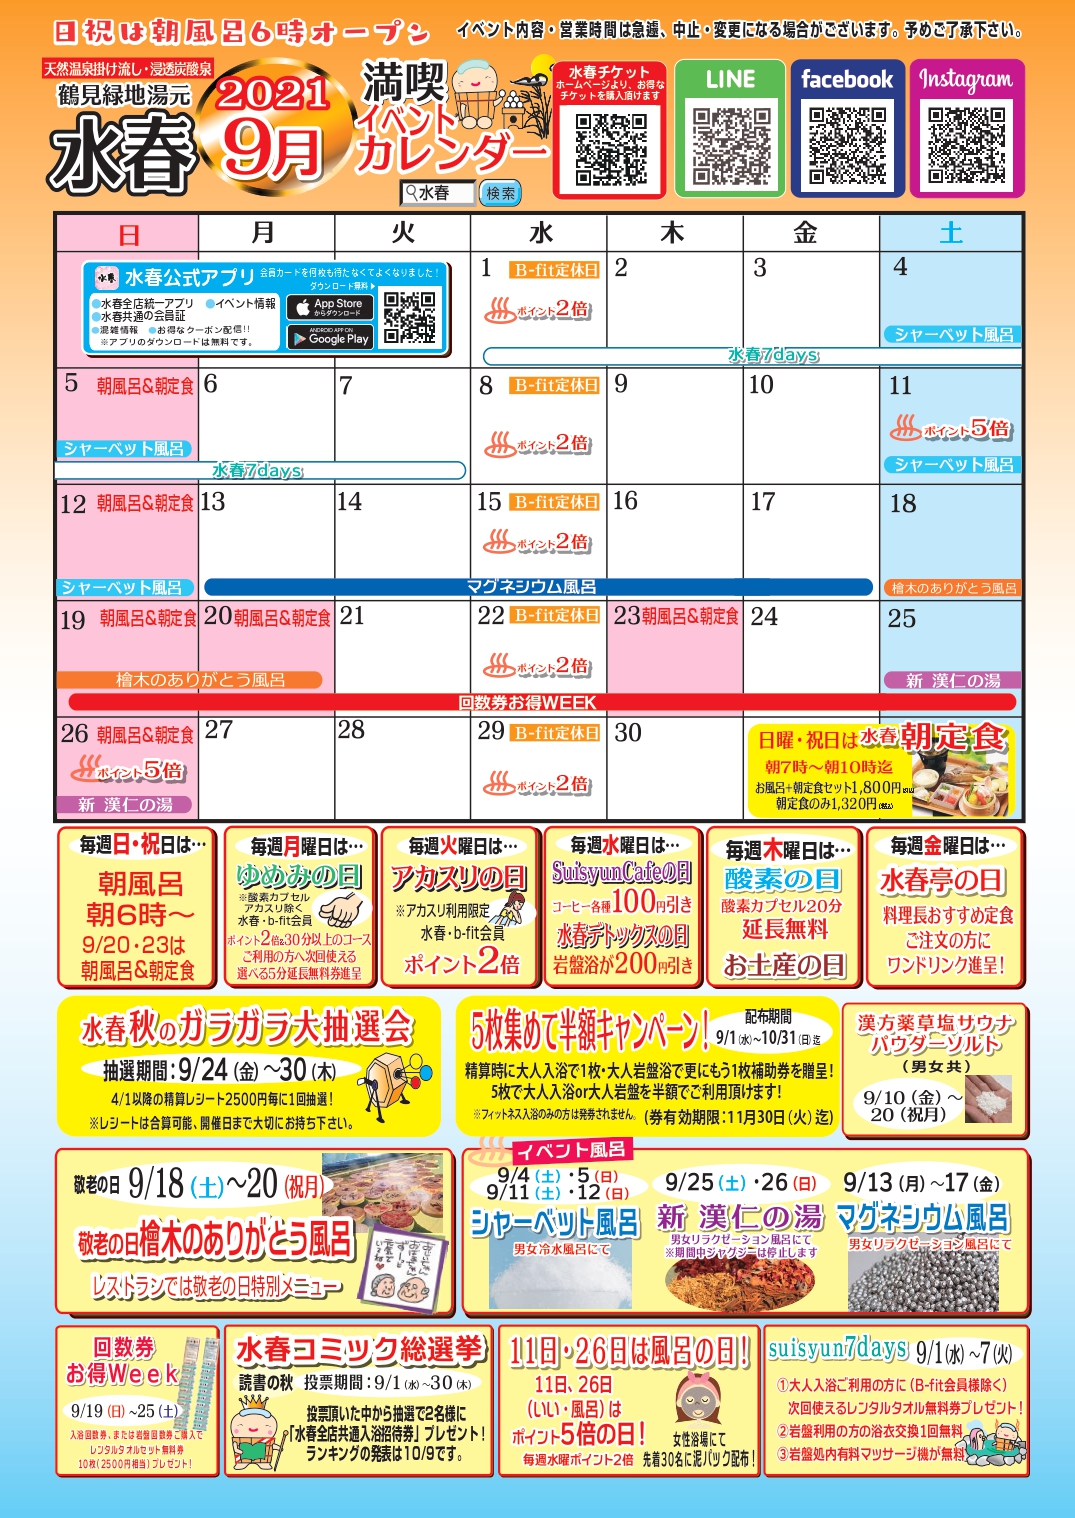 9月イベントカレンダー 鶴見緑地湯元水春 大阪最大級の日帰り温泉